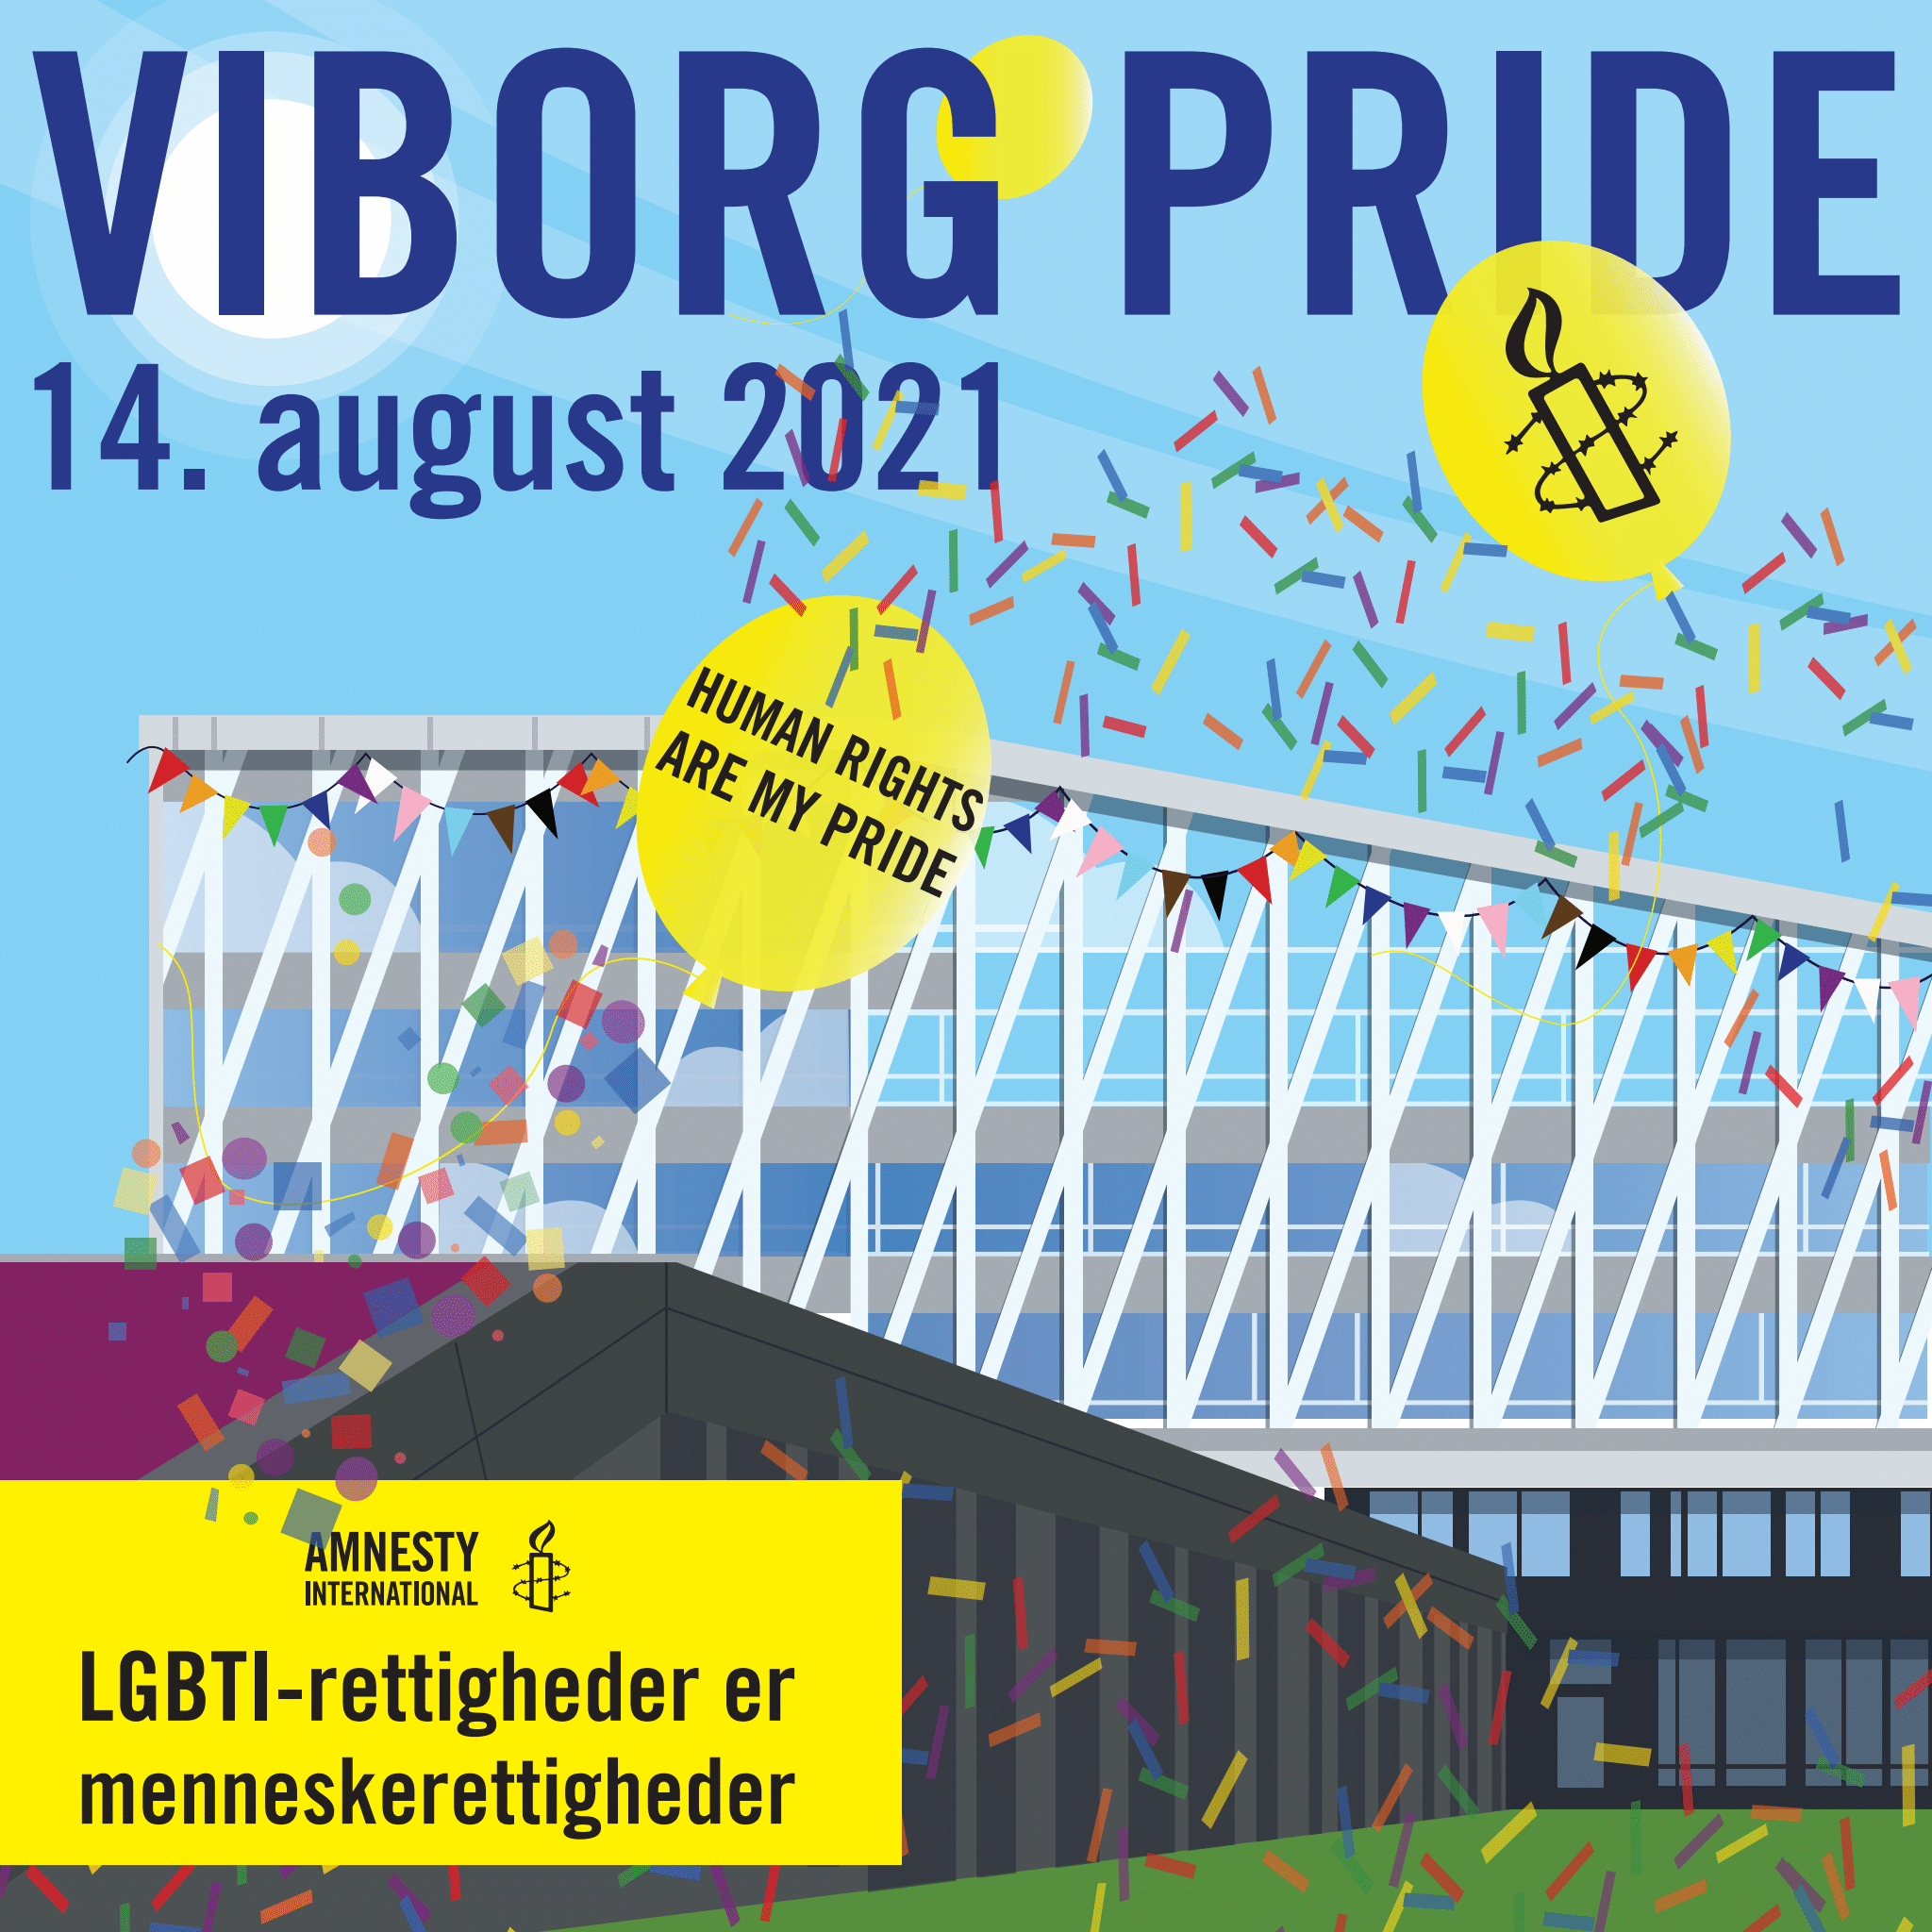 Viborg Pride Square